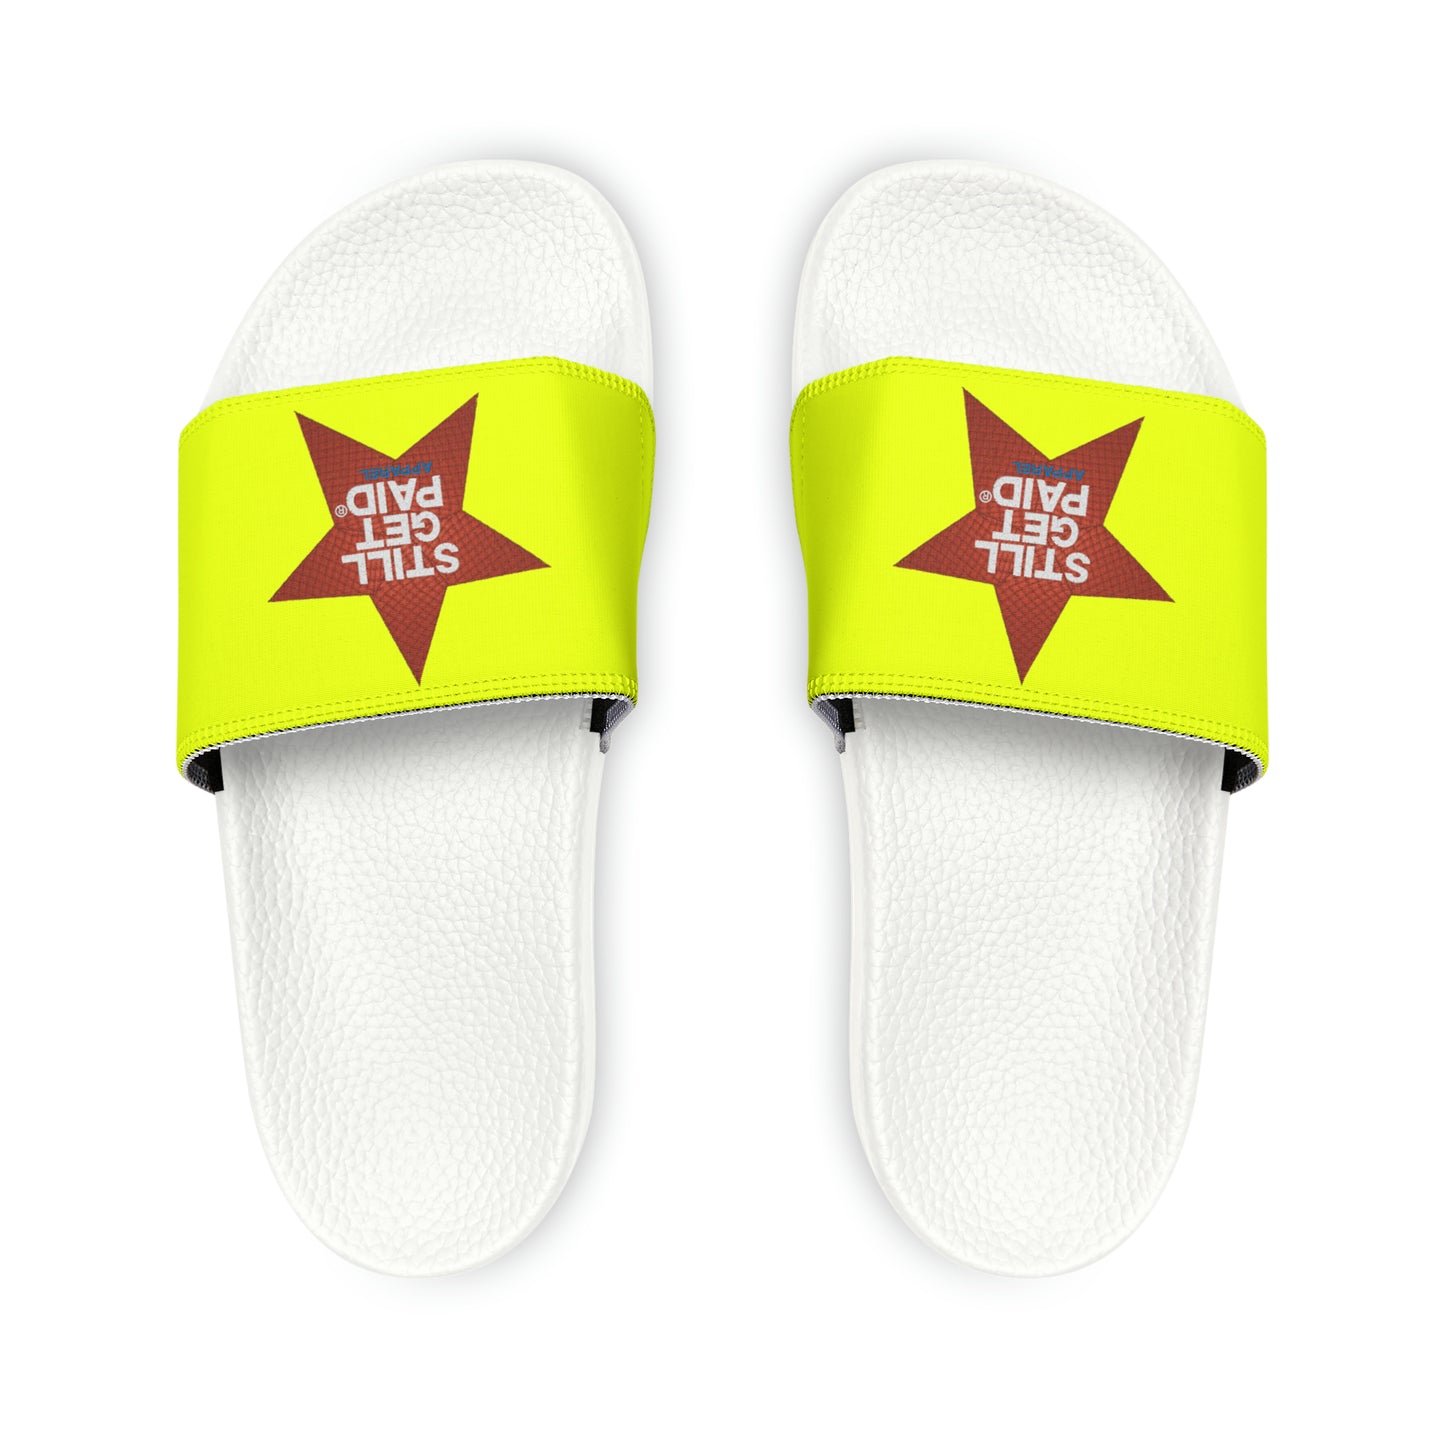 STILLGETPAID APPAREL Women's PU Slide Sandals